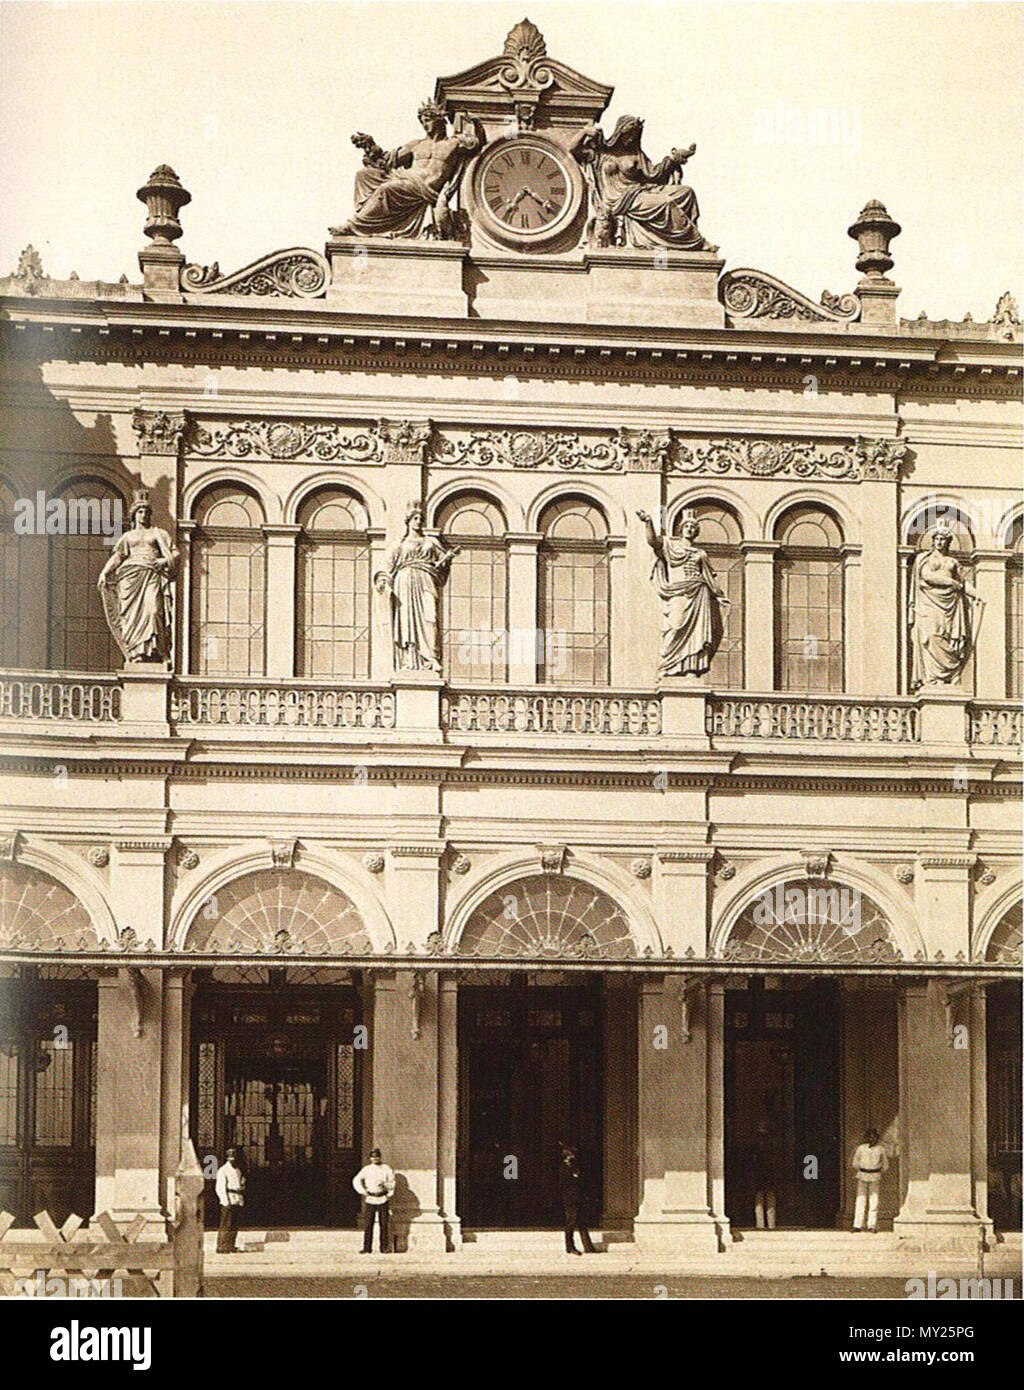 . Eingaenge an der Abfahrsseite, Ostbahnhof in Wien. 1880. Atelier M. Frankenstein 500 Staatsbahnhof Abfahrtsseite 1880 Stock Photo